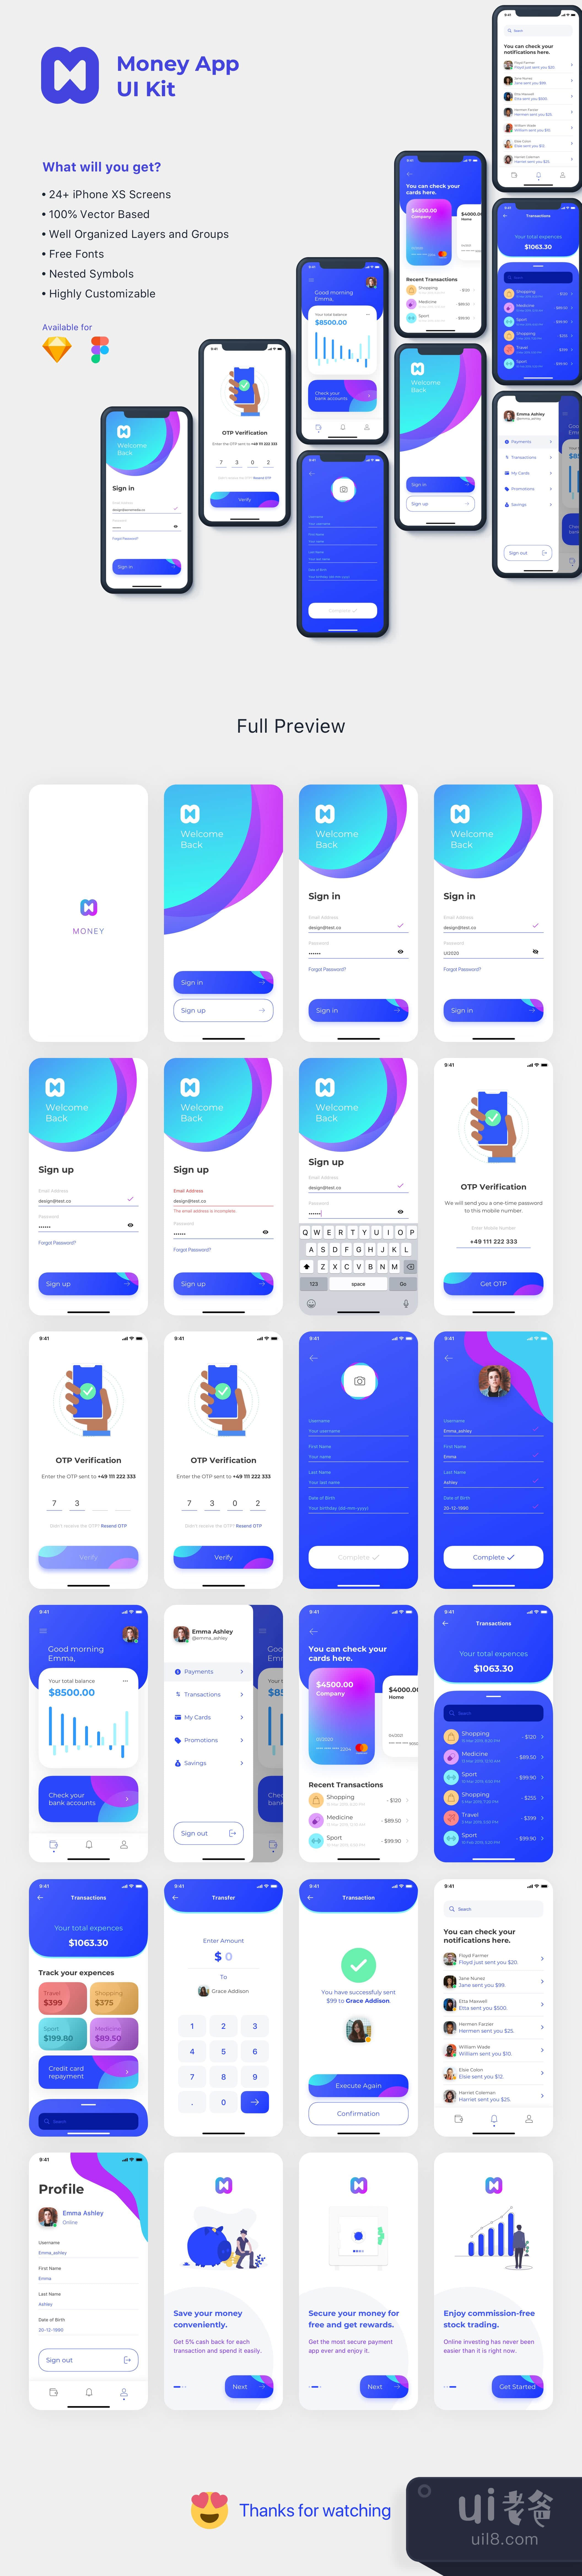 货币应用UI包 (Money App UI Kit)插图